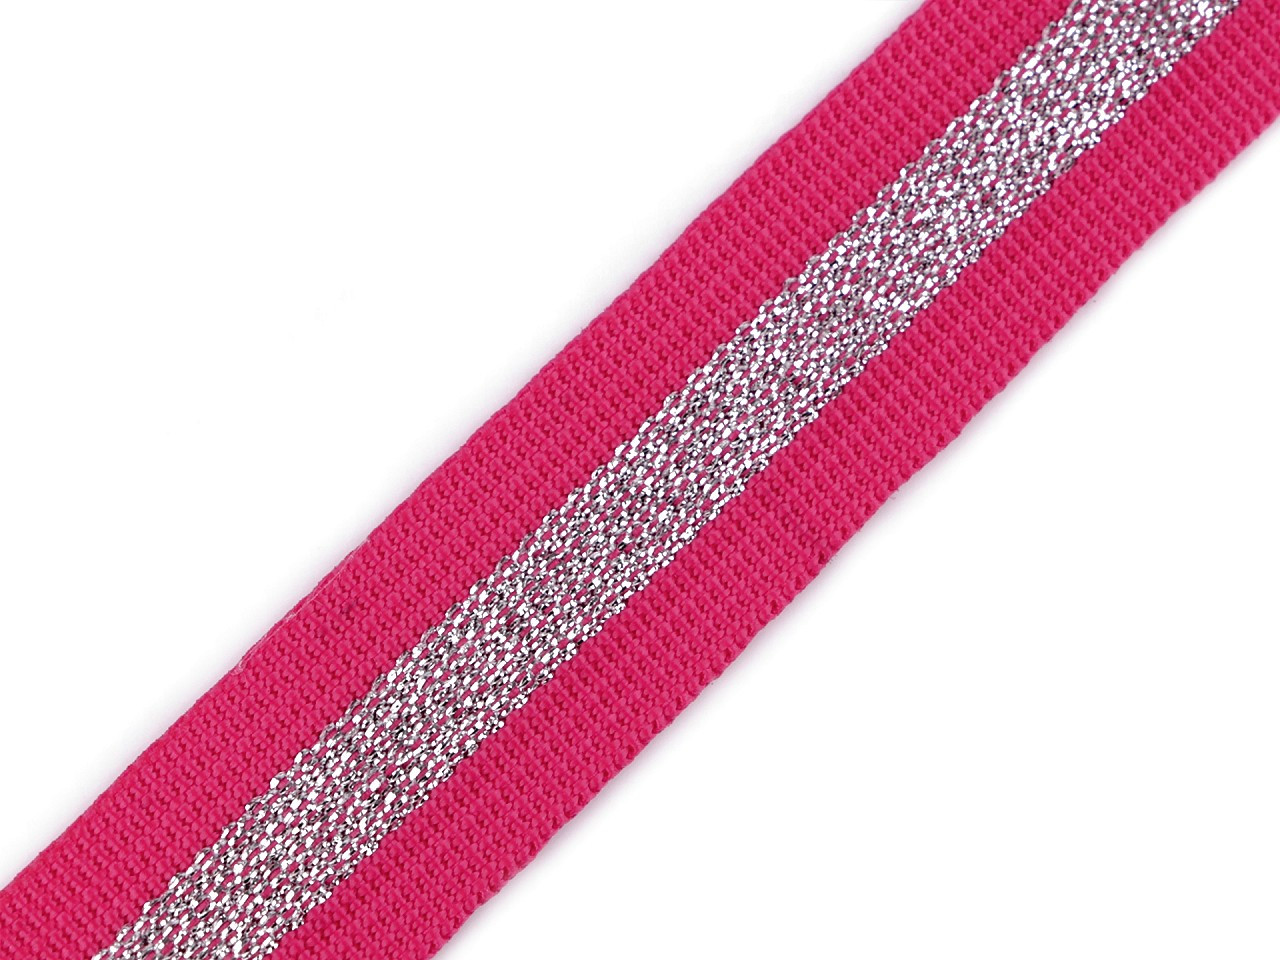 Popruh polypropylénový šíře 25 mm s lurexem, barva 145 (25 mm) růžová malinová stříbrná